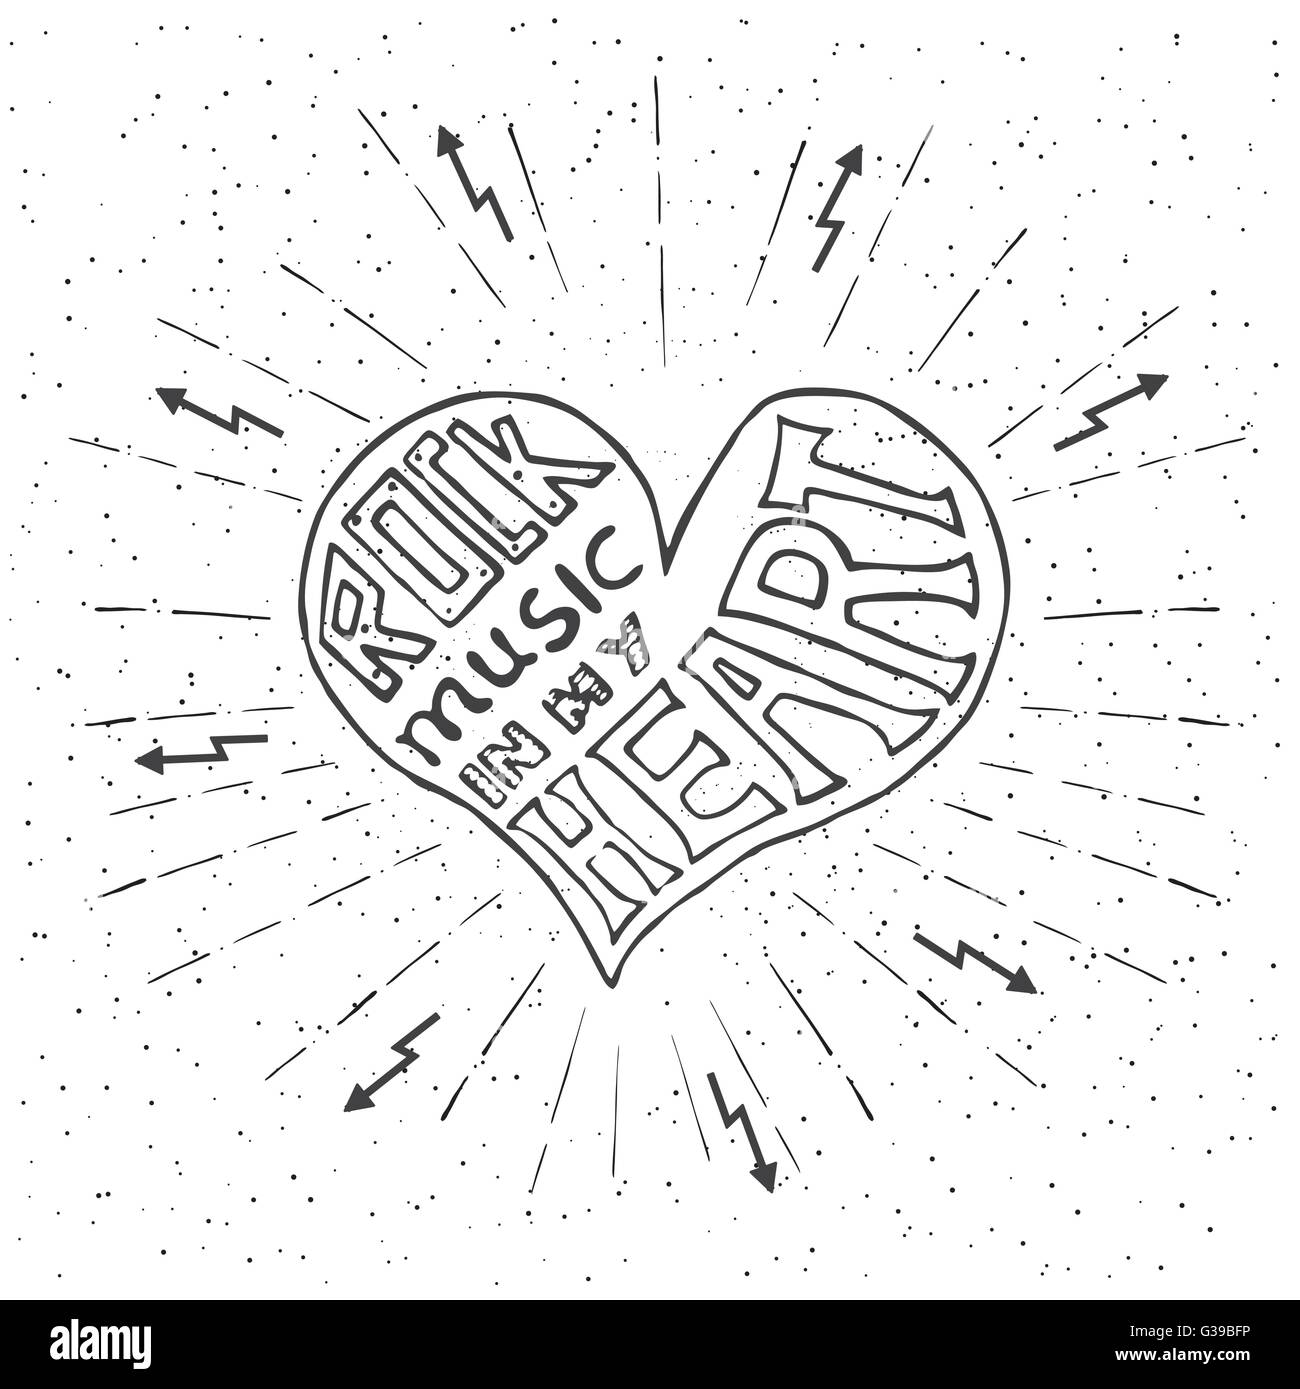 Rock-Musik in meinem Herzen. Handgezeichnete Schriftzug-Design mit Herz. Typografie-Konzept für t-shirt-Design oder Web-Site. Stock Vektor